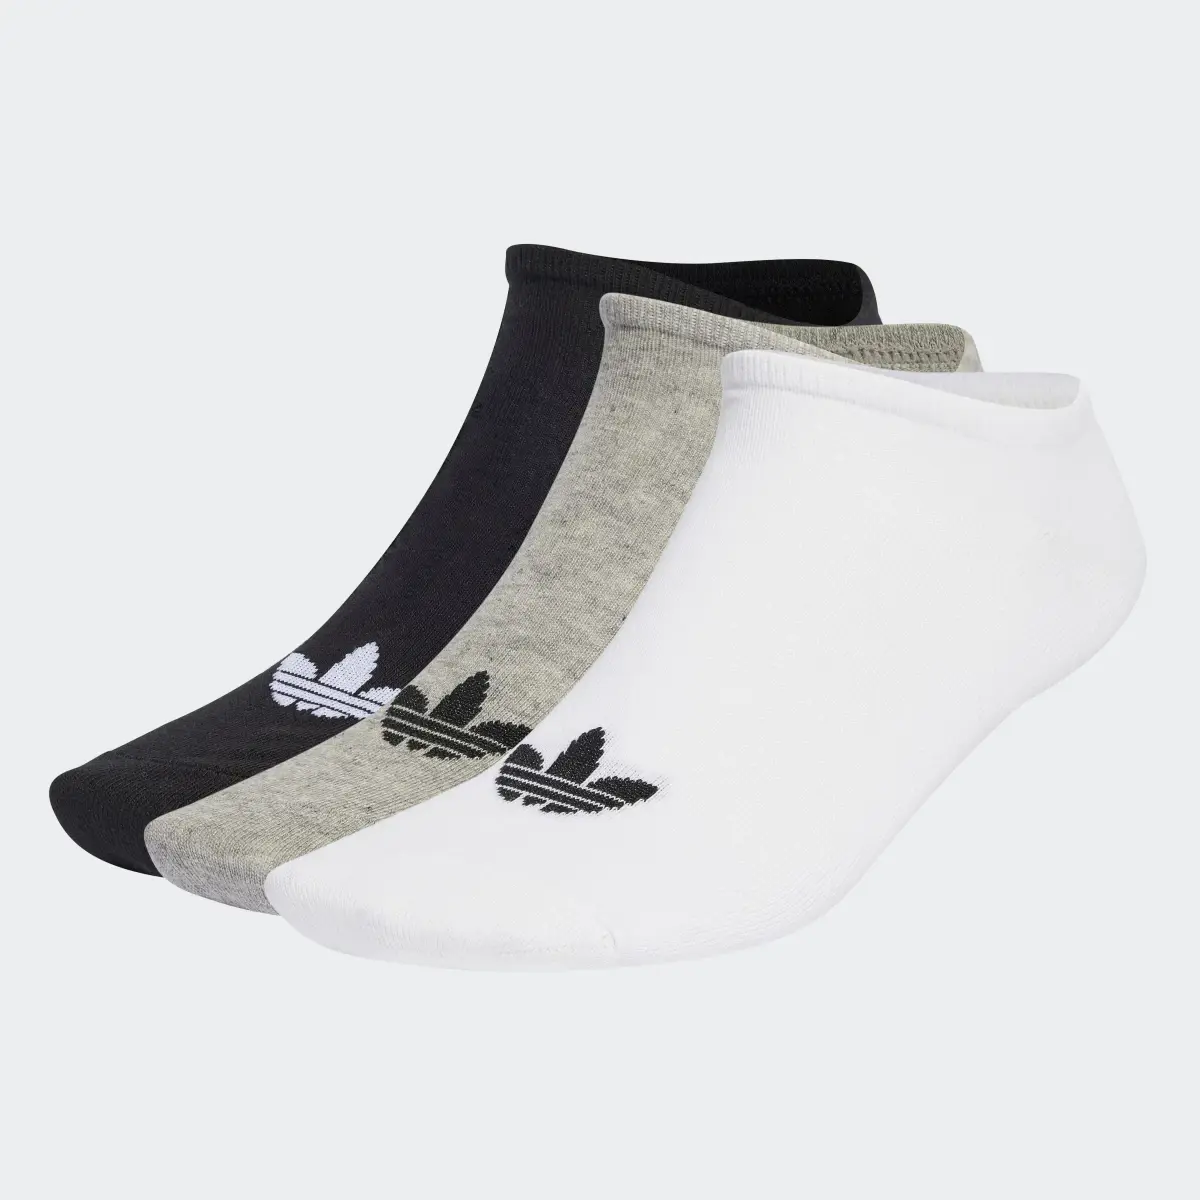 Adidas Calcetines tobilleros Trefoil. 2